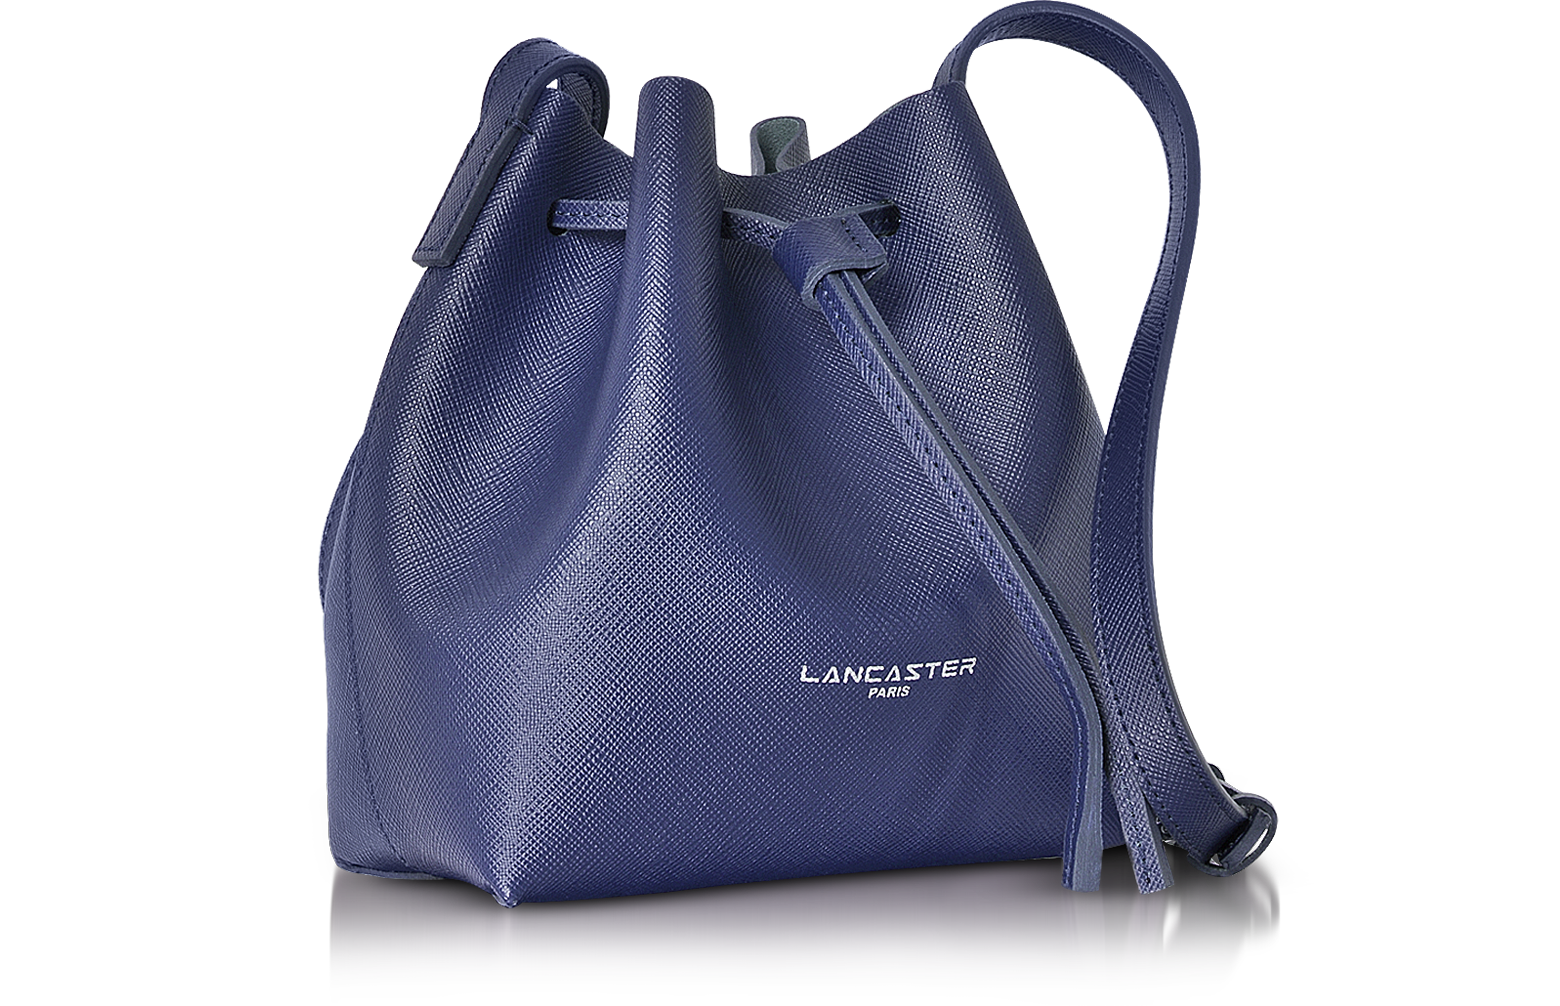 Large bucket bag Pur & Element City – Lancaster US